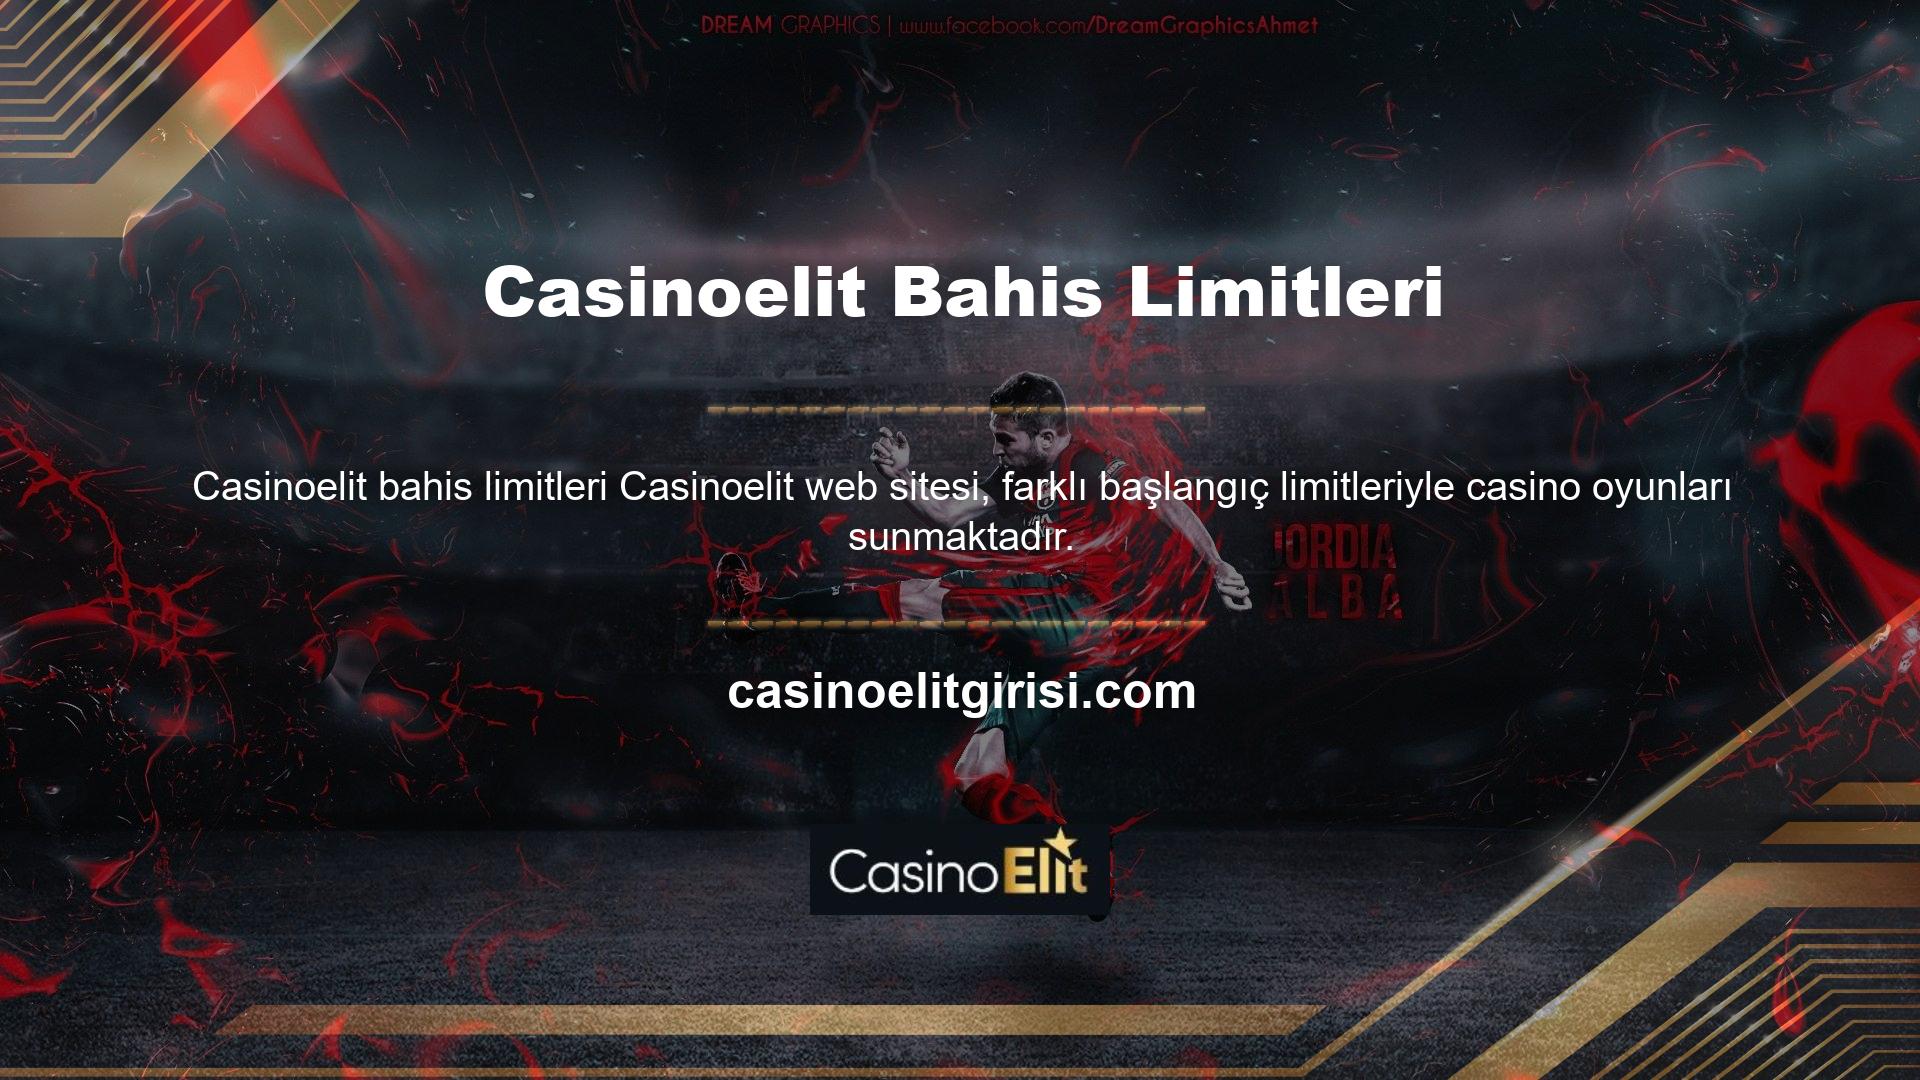 Casinoelit ayrıca Oyunu zaman zaman Güncellemelere bağlantı vererek güncelleyebilir